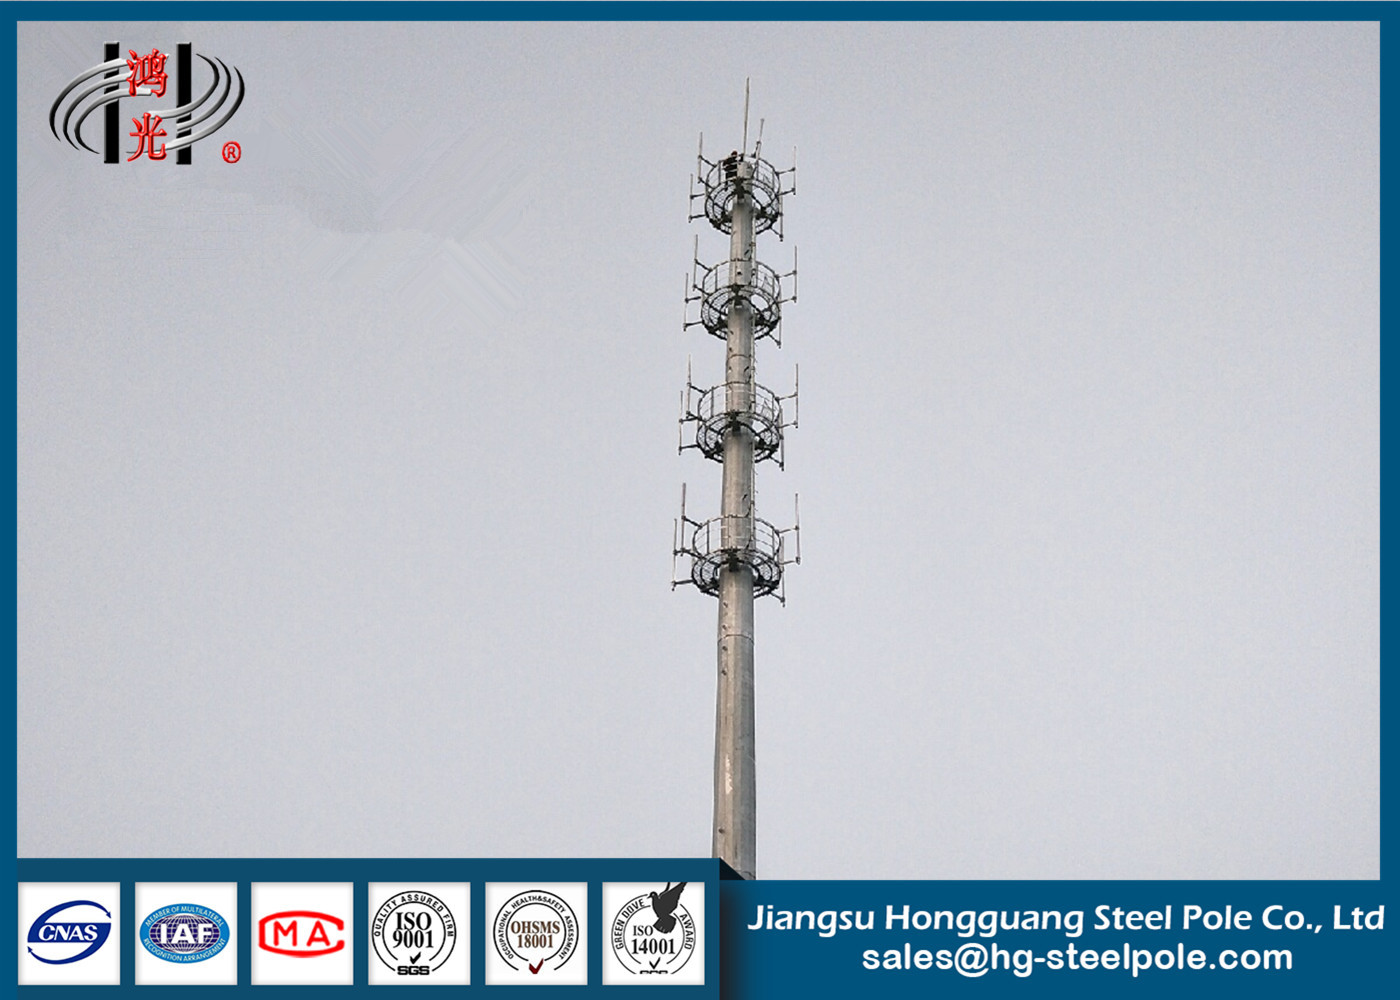 Polygonale HDG-Telekommunikations-Türme mit kurzem Bau-Zyklus für den Rundfunk